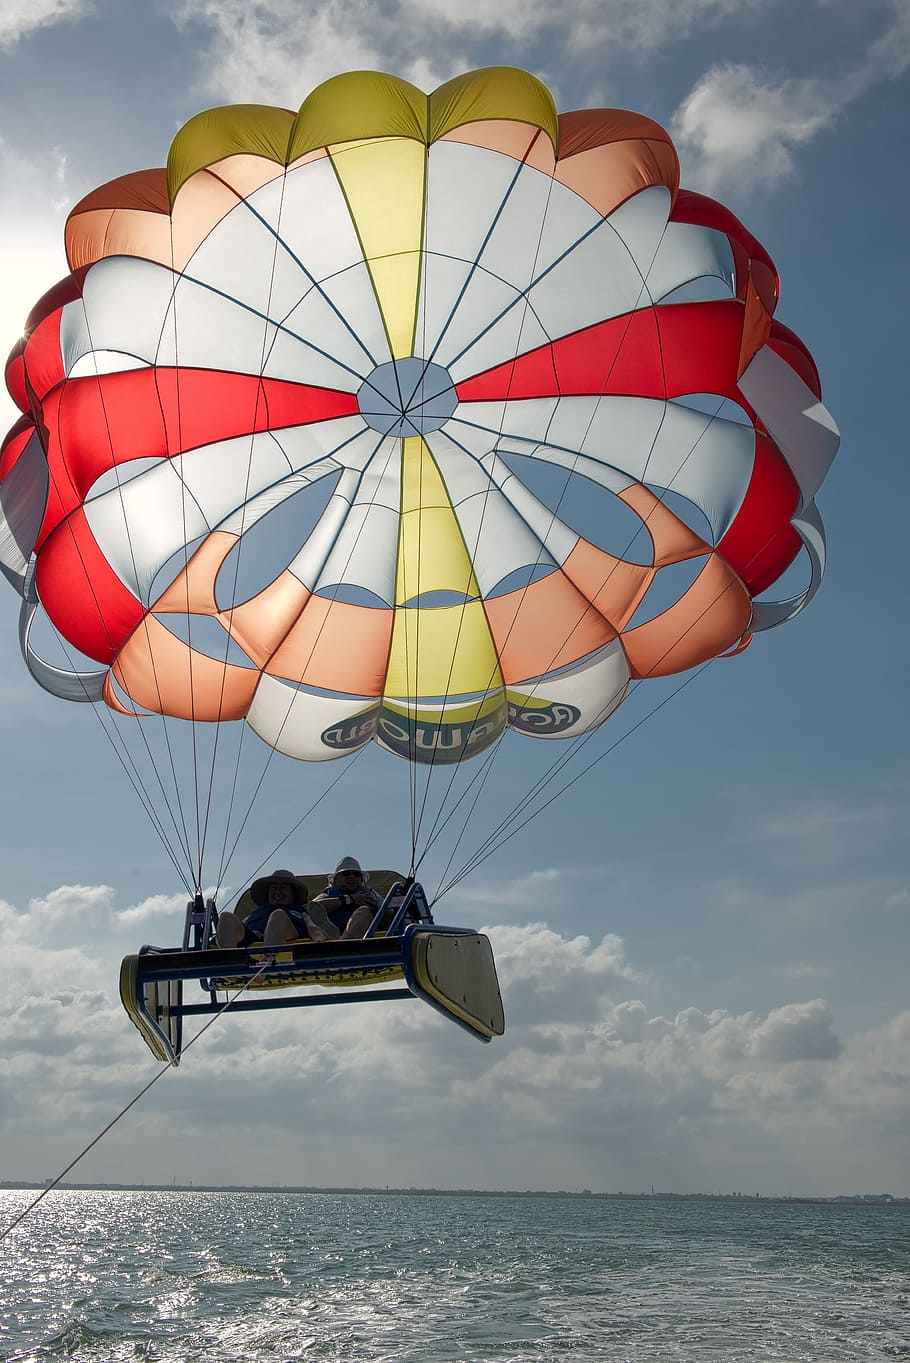 Sombrilla, paracaídas, cielo, actividades, verano, mar, desafío, paracaidismo, aventura, ocio